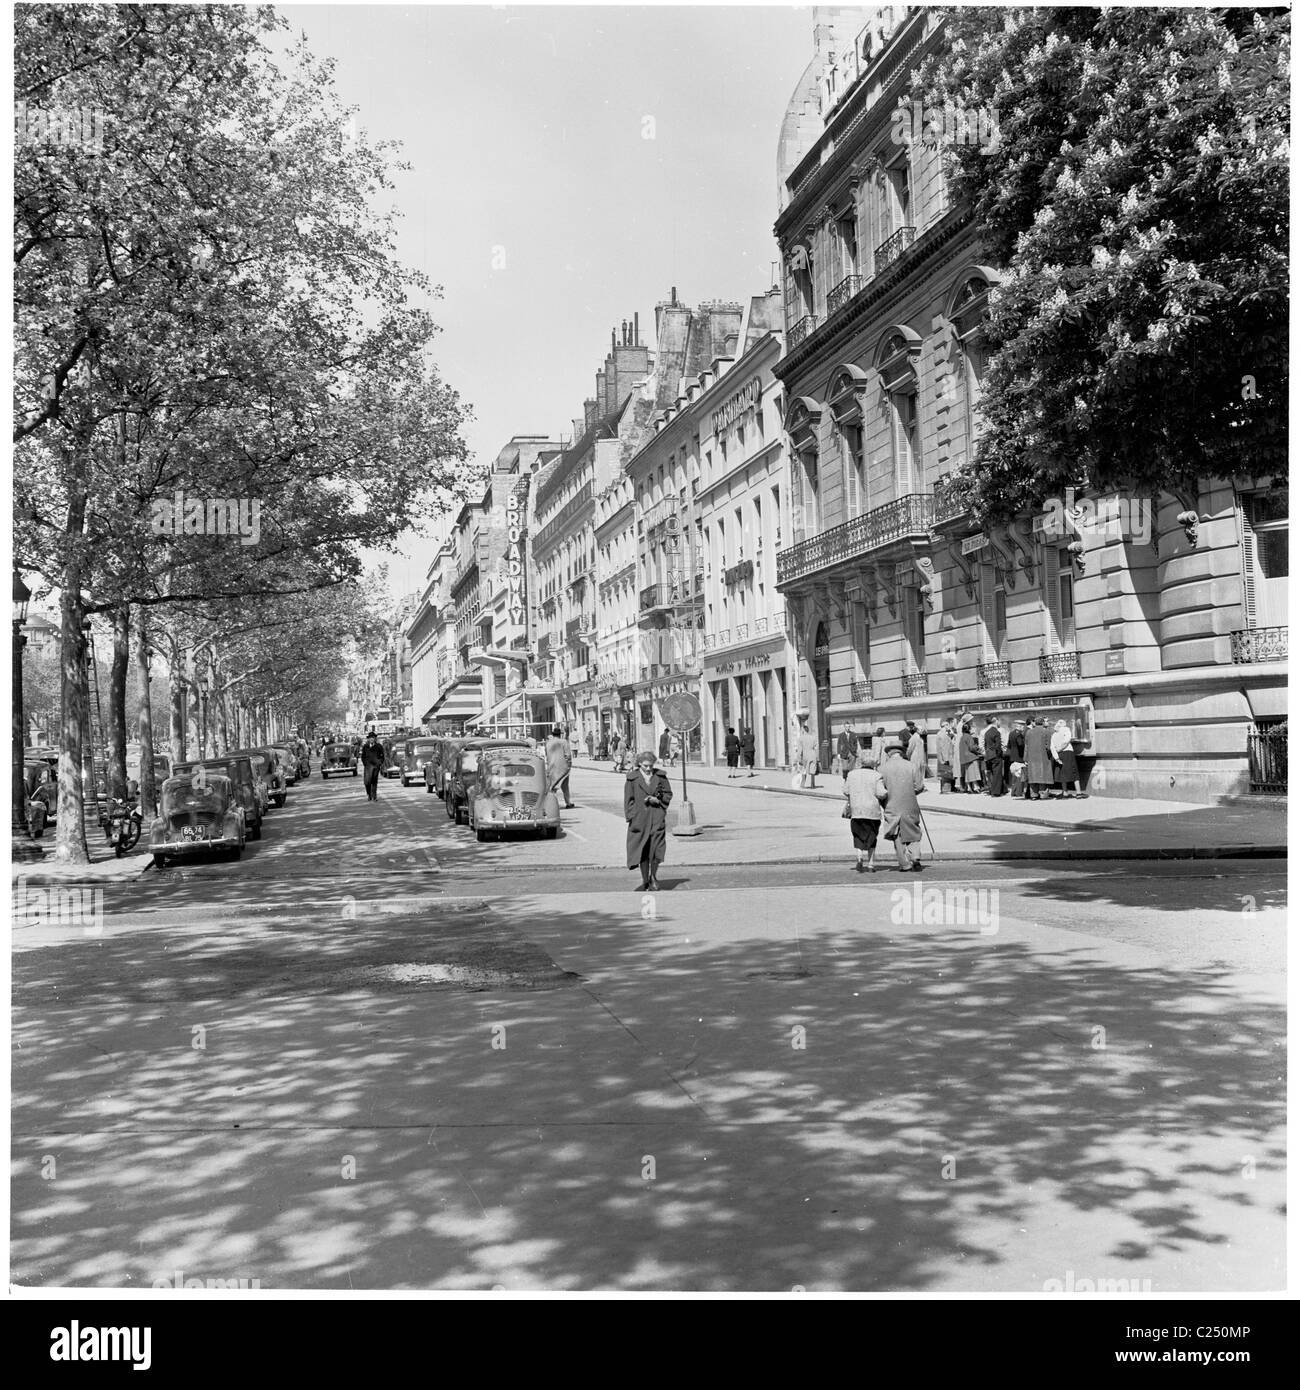 1950s, voitures garées de l'époque dans une petite rue à côté de la célèbre avenue des champs-Élysées à Paris, en France, avec quelques Parisiens passant à pied. Banque D'Images